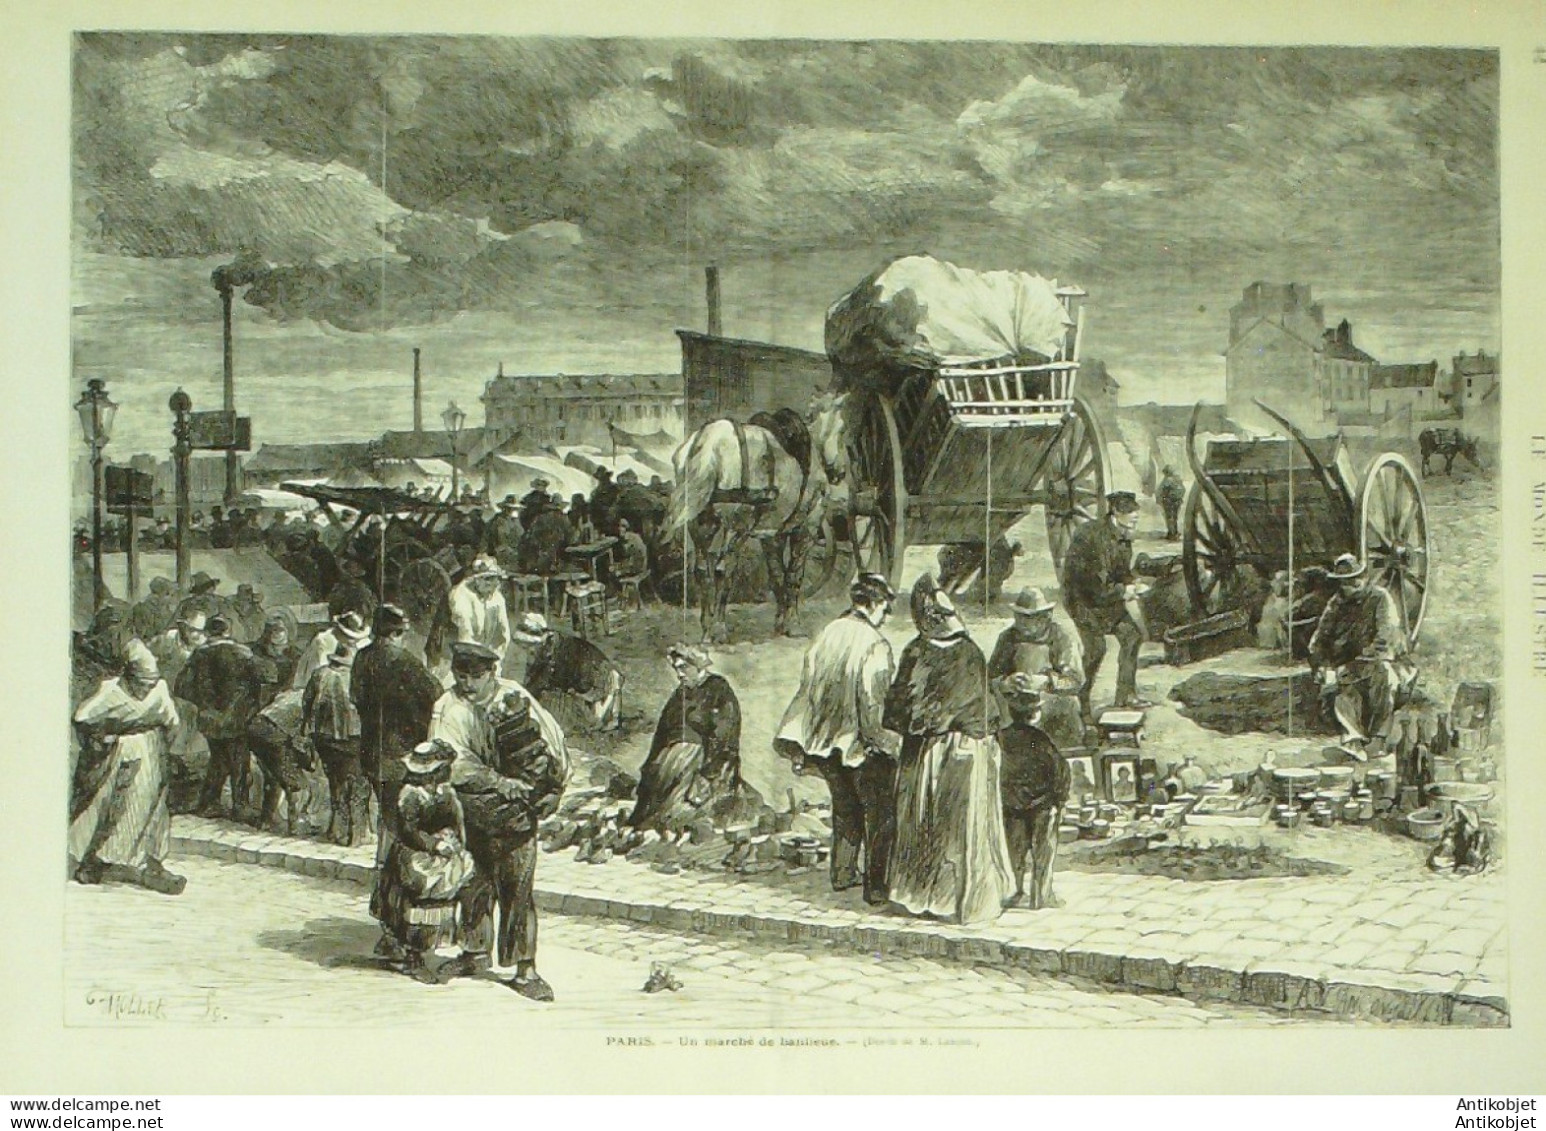 Le Monde illustré 1872 n°797 Strasbourg (67) Kheil Suisse Genève Algérie Souf Lyon (69) 